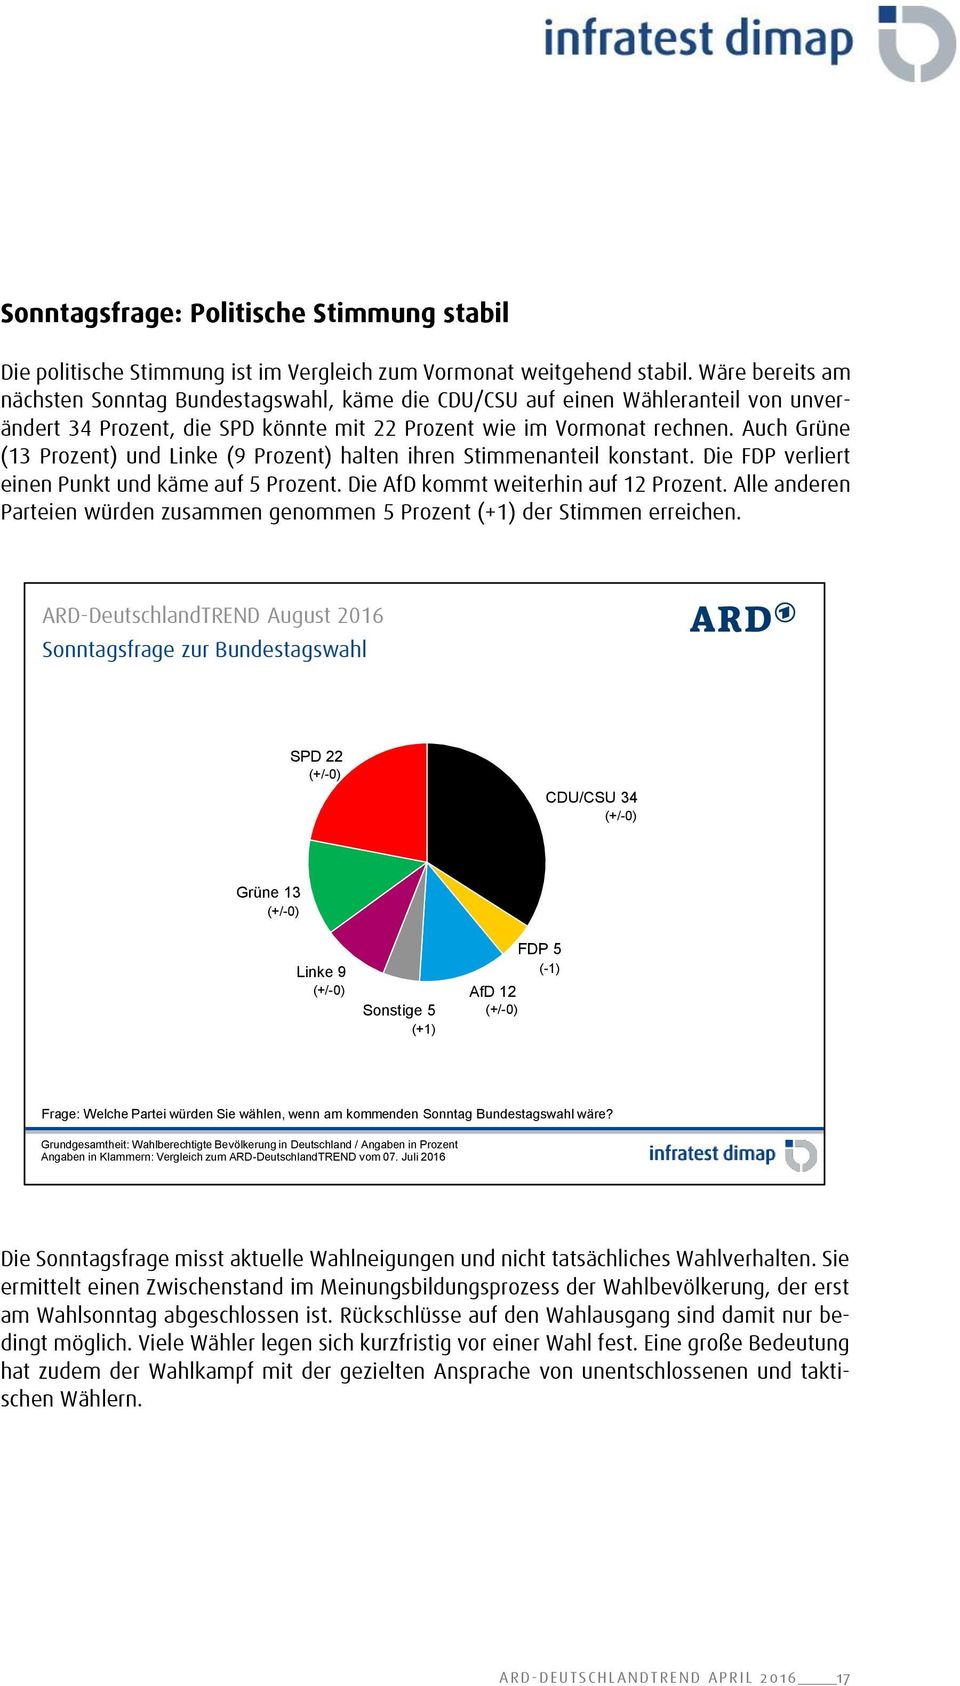 Auch Grüne (13 Prozent) und Linke (9 Prozent) halten ihren Stimmenanteil konstant. Die FDP verliert einen Punkt und käme auf 5 Prozent. Die AfD kommt weiterhin auf 12 Prozent.